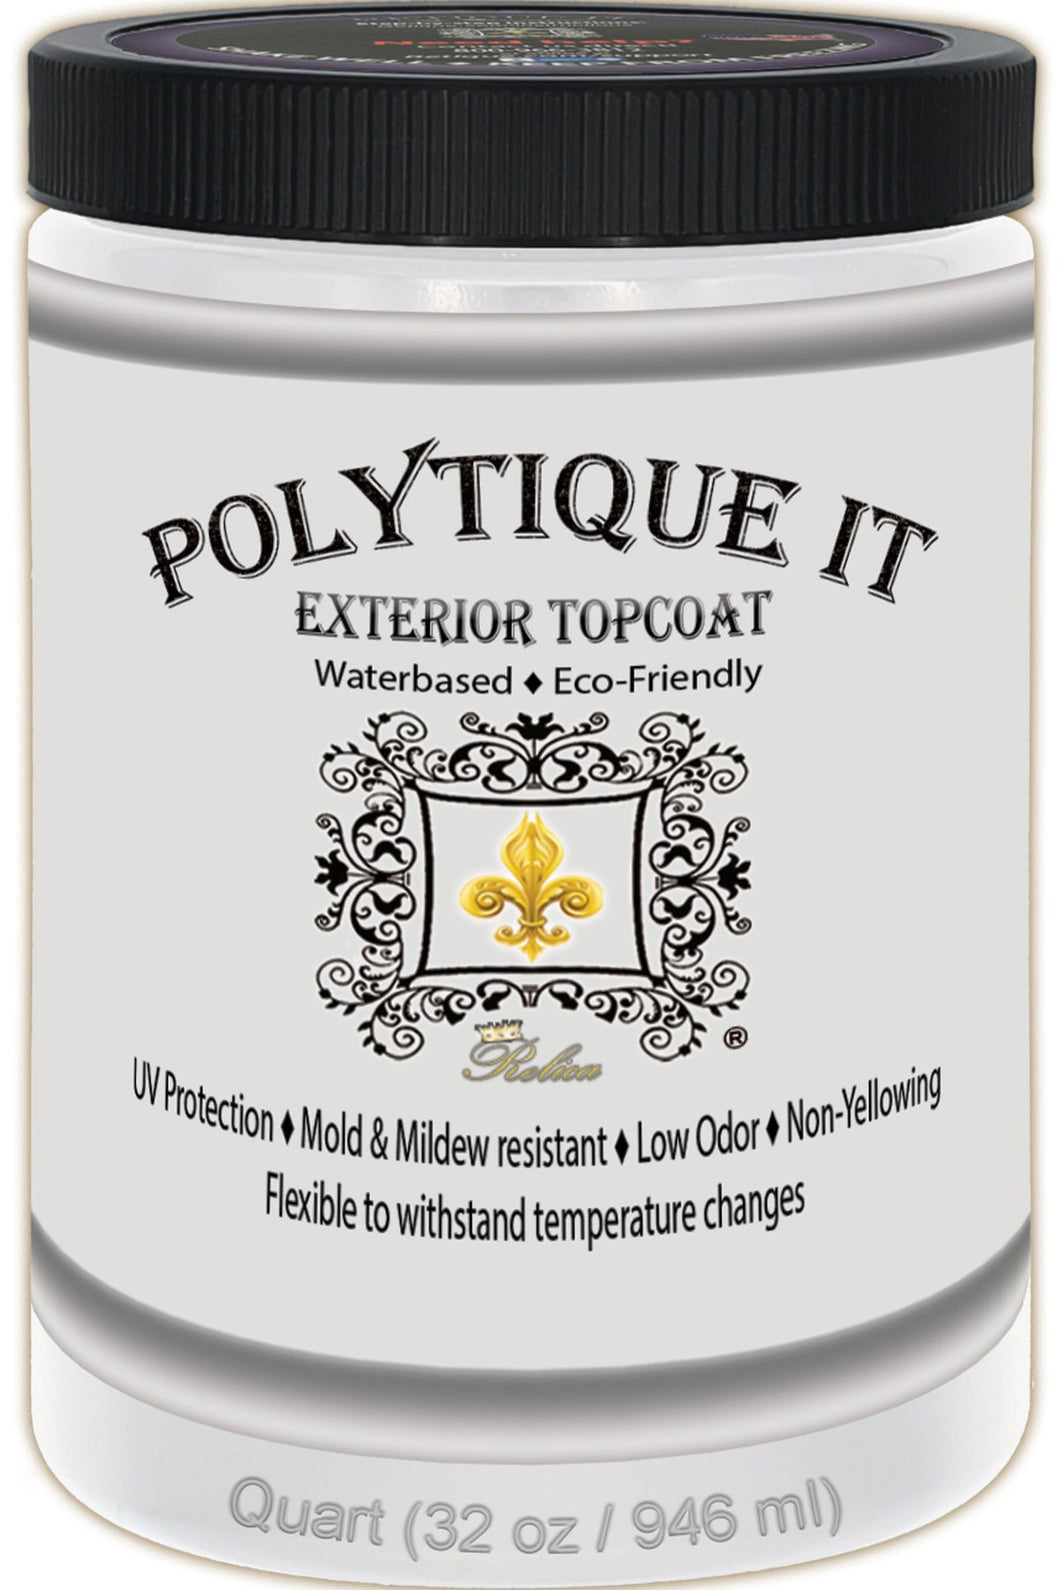 Retique It - Polytique It Exterior Marine Grade Top Coat 8 oz.